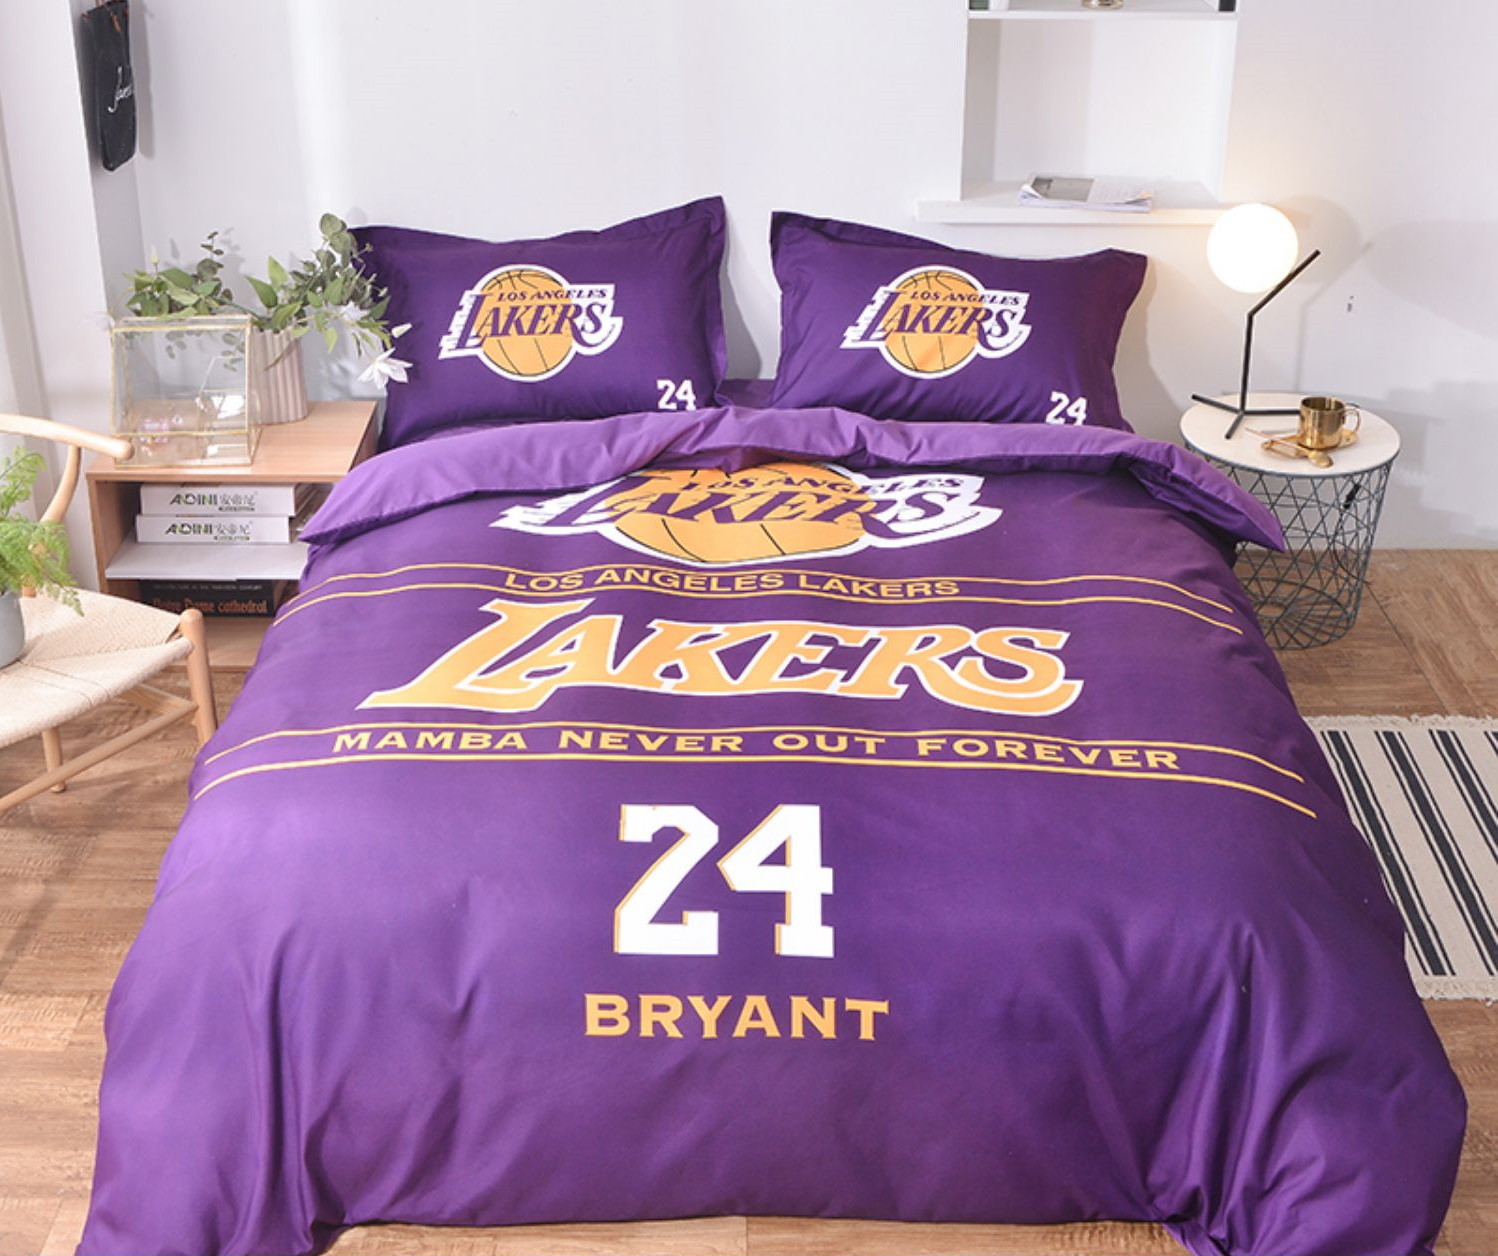 Postelnoe belyo Los Angeles Lakers Bryant 24 Purple